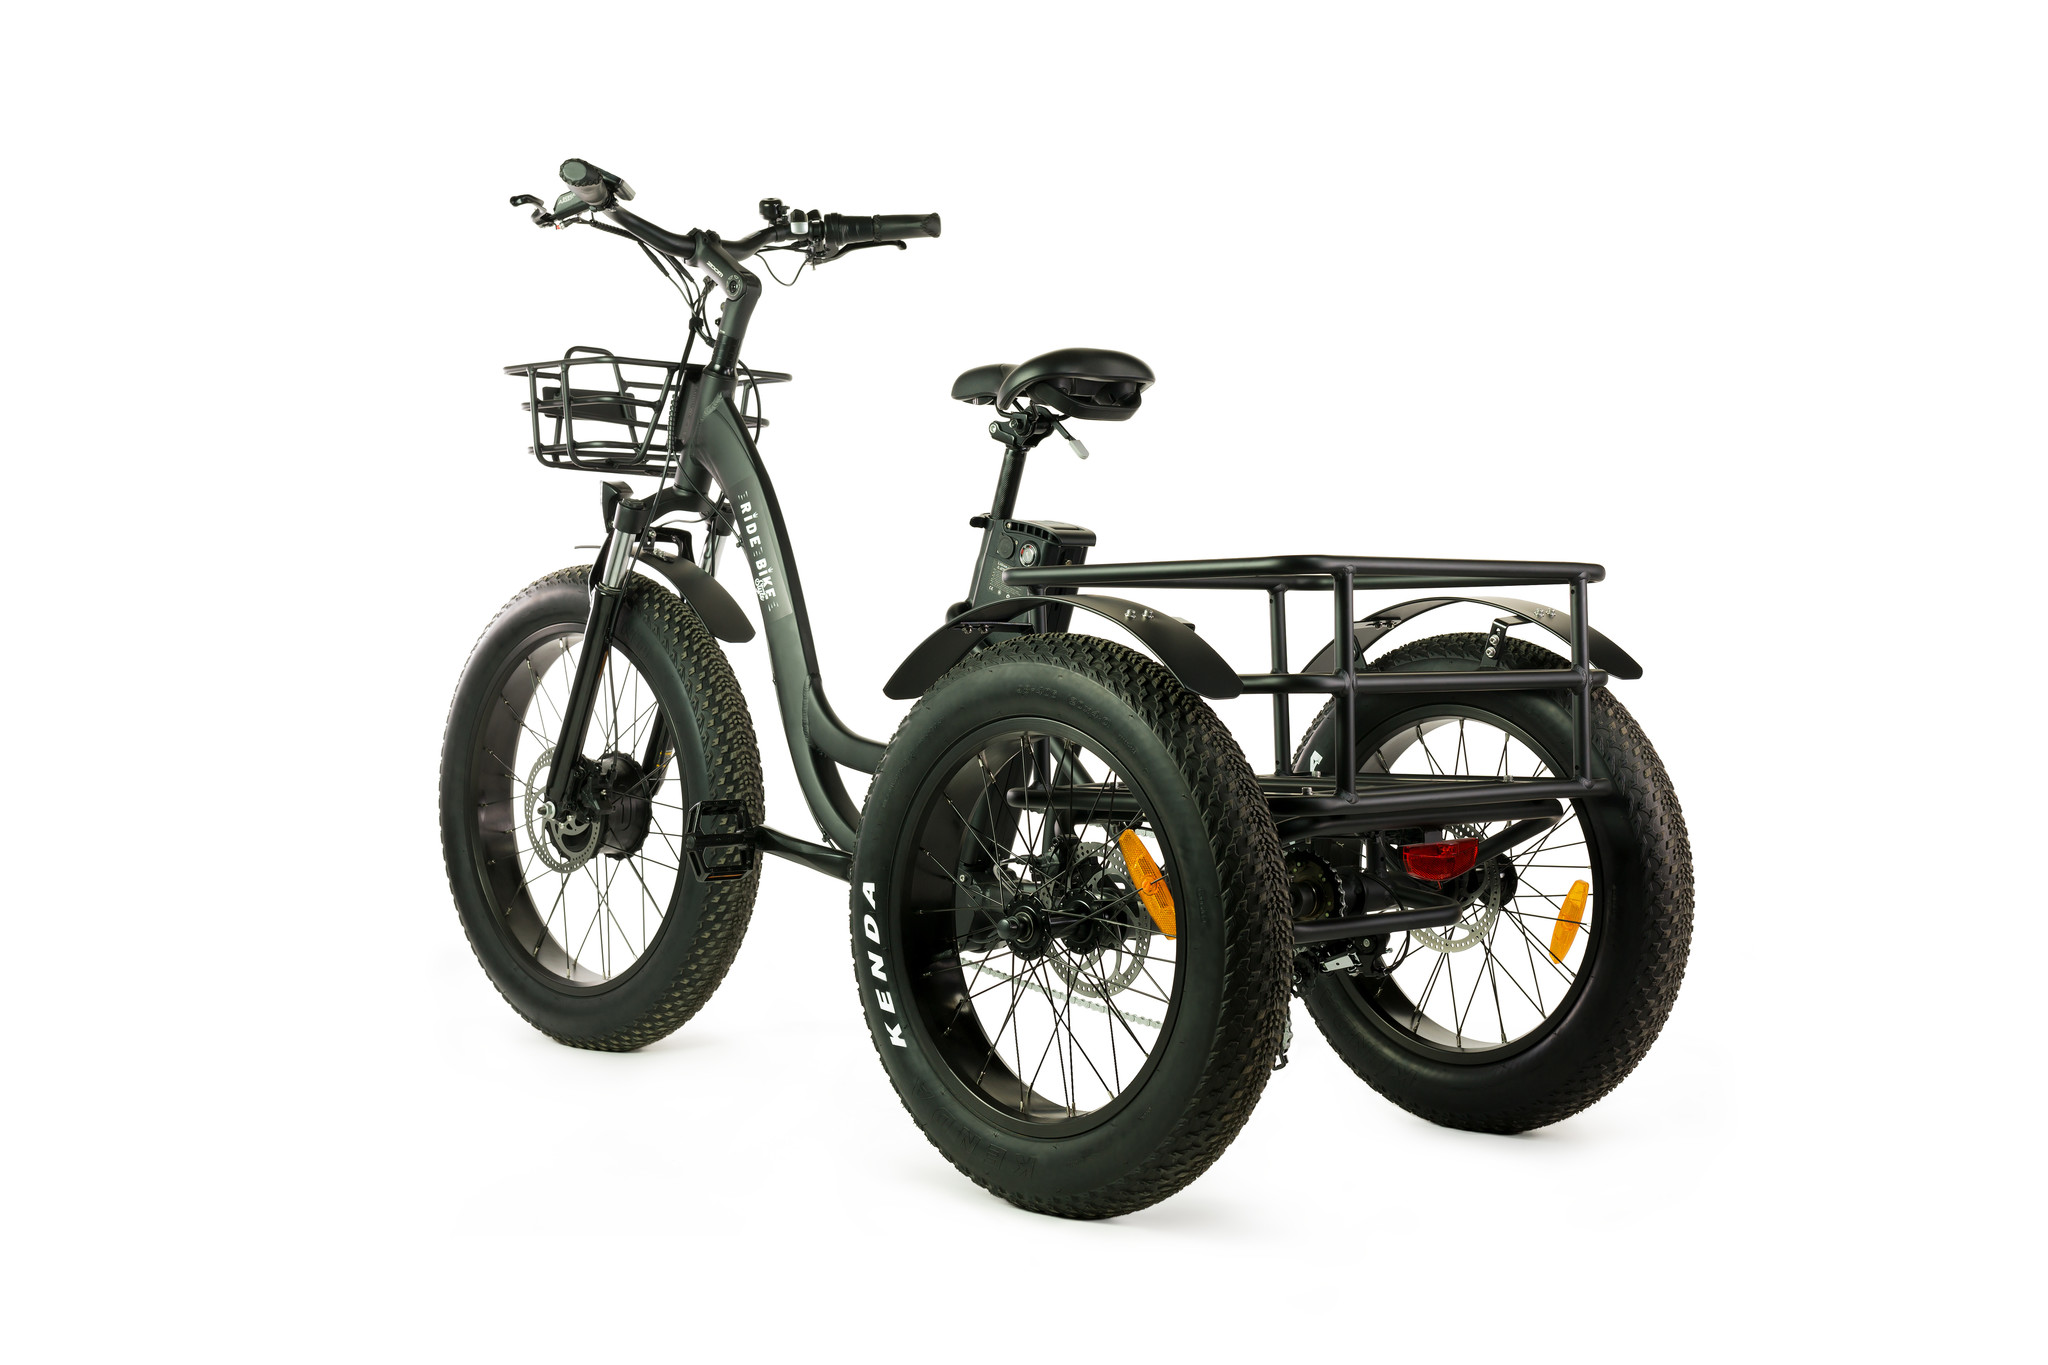 Vélo électrique 3 roues tricycle fourche suspendue touche démarrage 6km/h  autonomie 55km